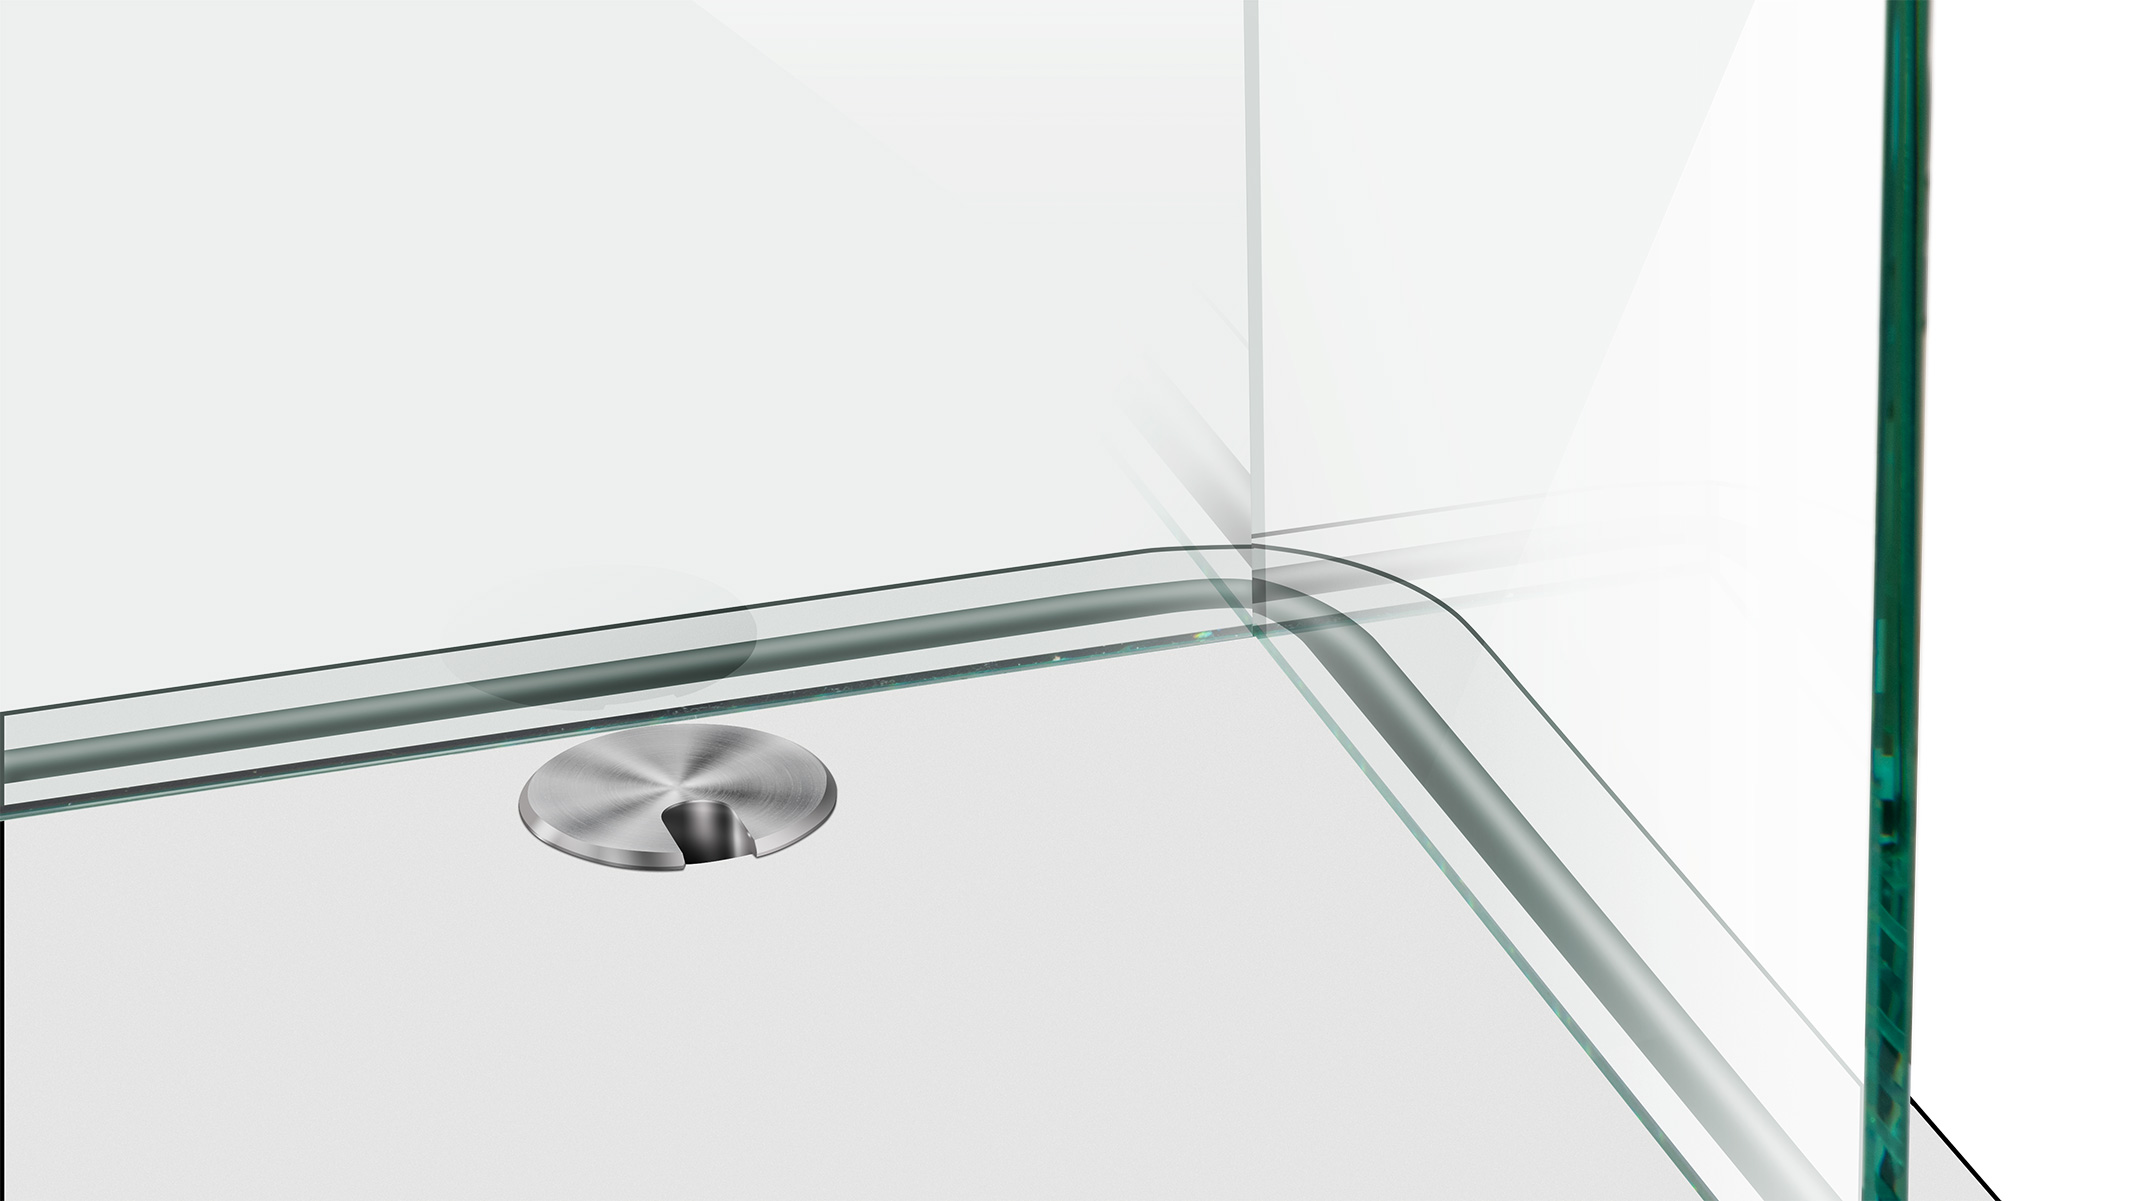 ESG Floatglas in U-Form, Höhe 30 cm, Stärke 6 mm, Kanten auf Gehrung UV verklebt, Kanten poliert,
Sonderausstattung für Ergolift Evolution 120 cm